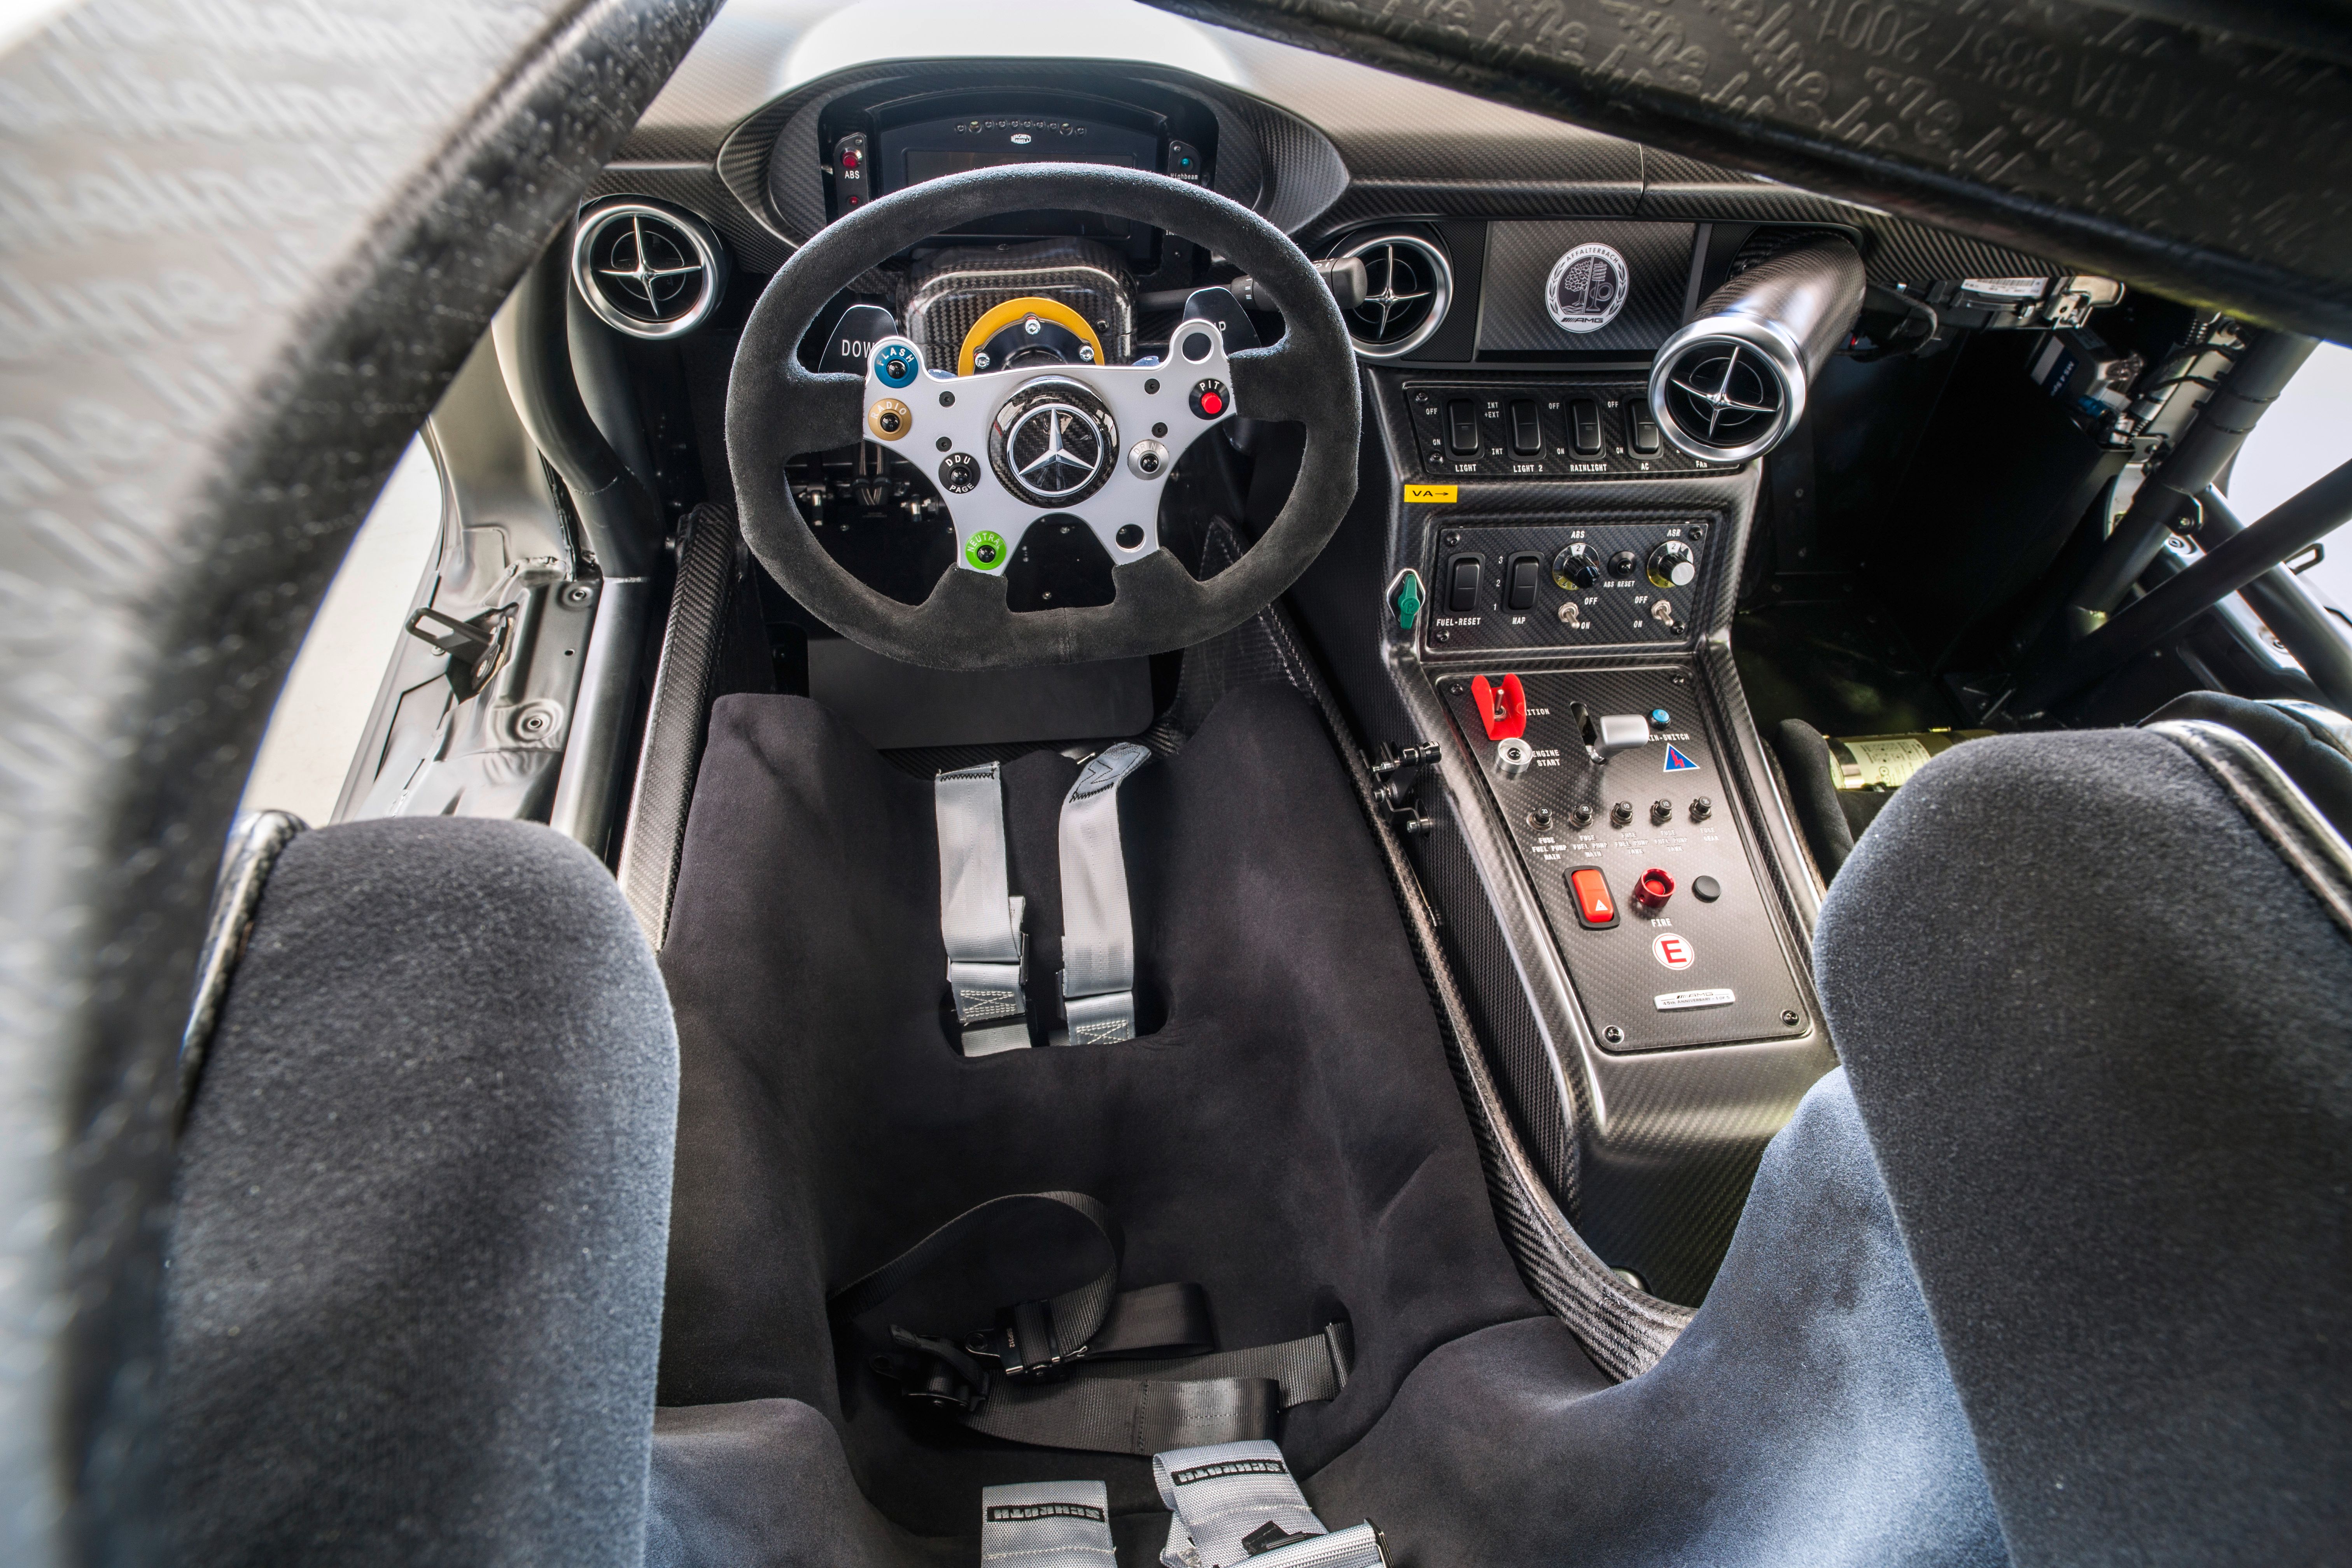 The 2012 Mercedes SLS GT3 Interior.